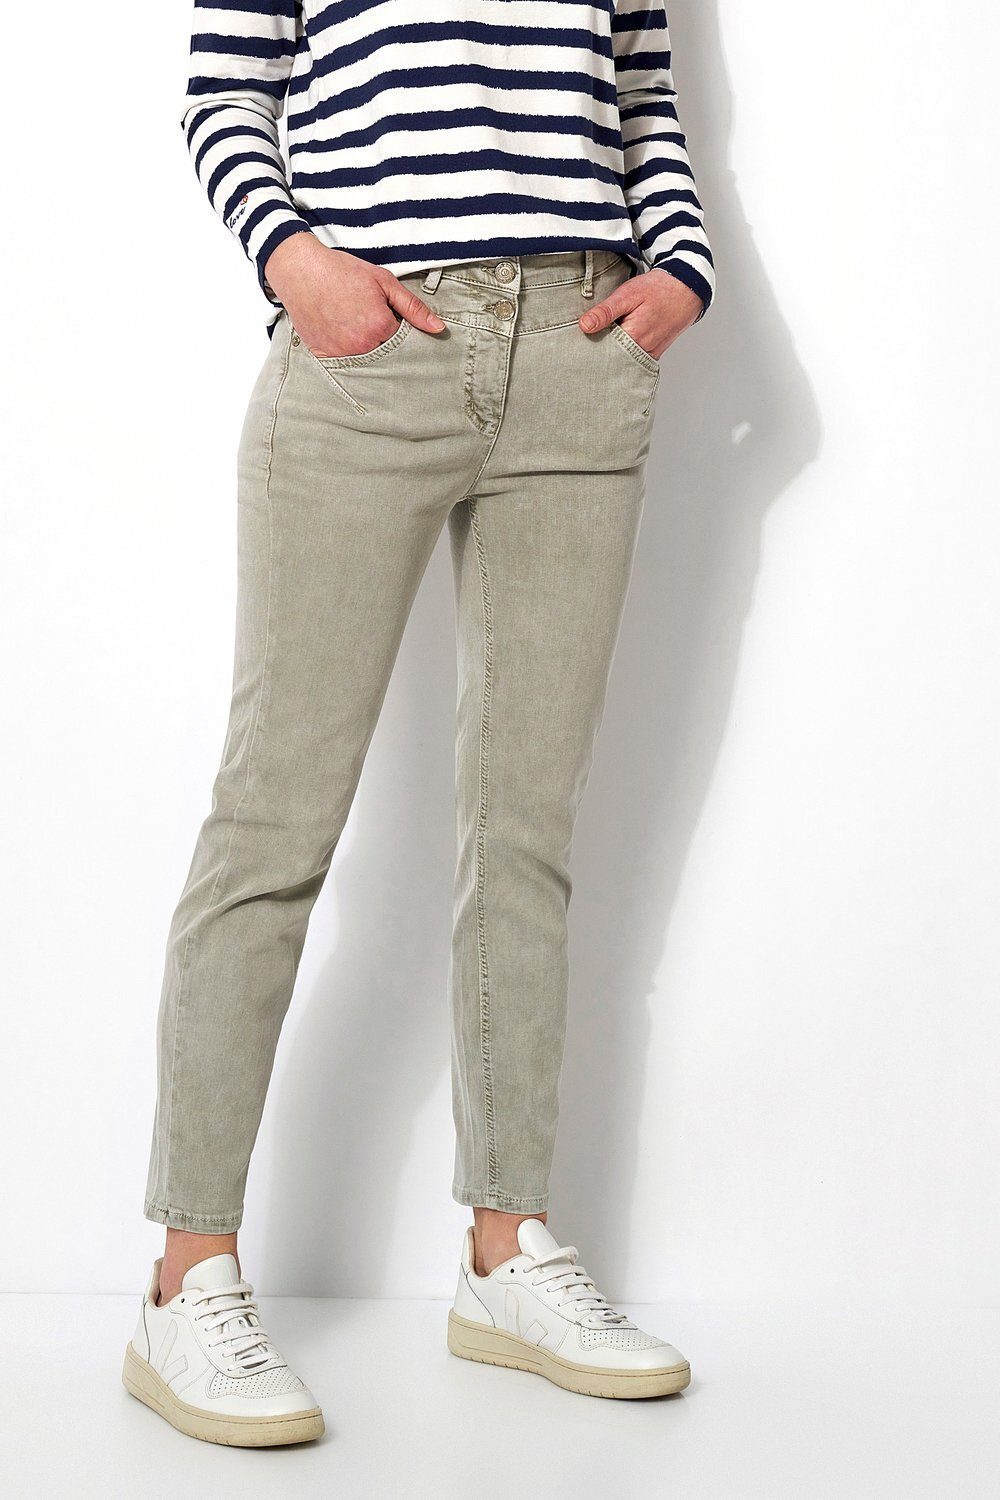 TONI 5-Pocket-Jeans kahki (1-tlg) online kaufen | OTTO